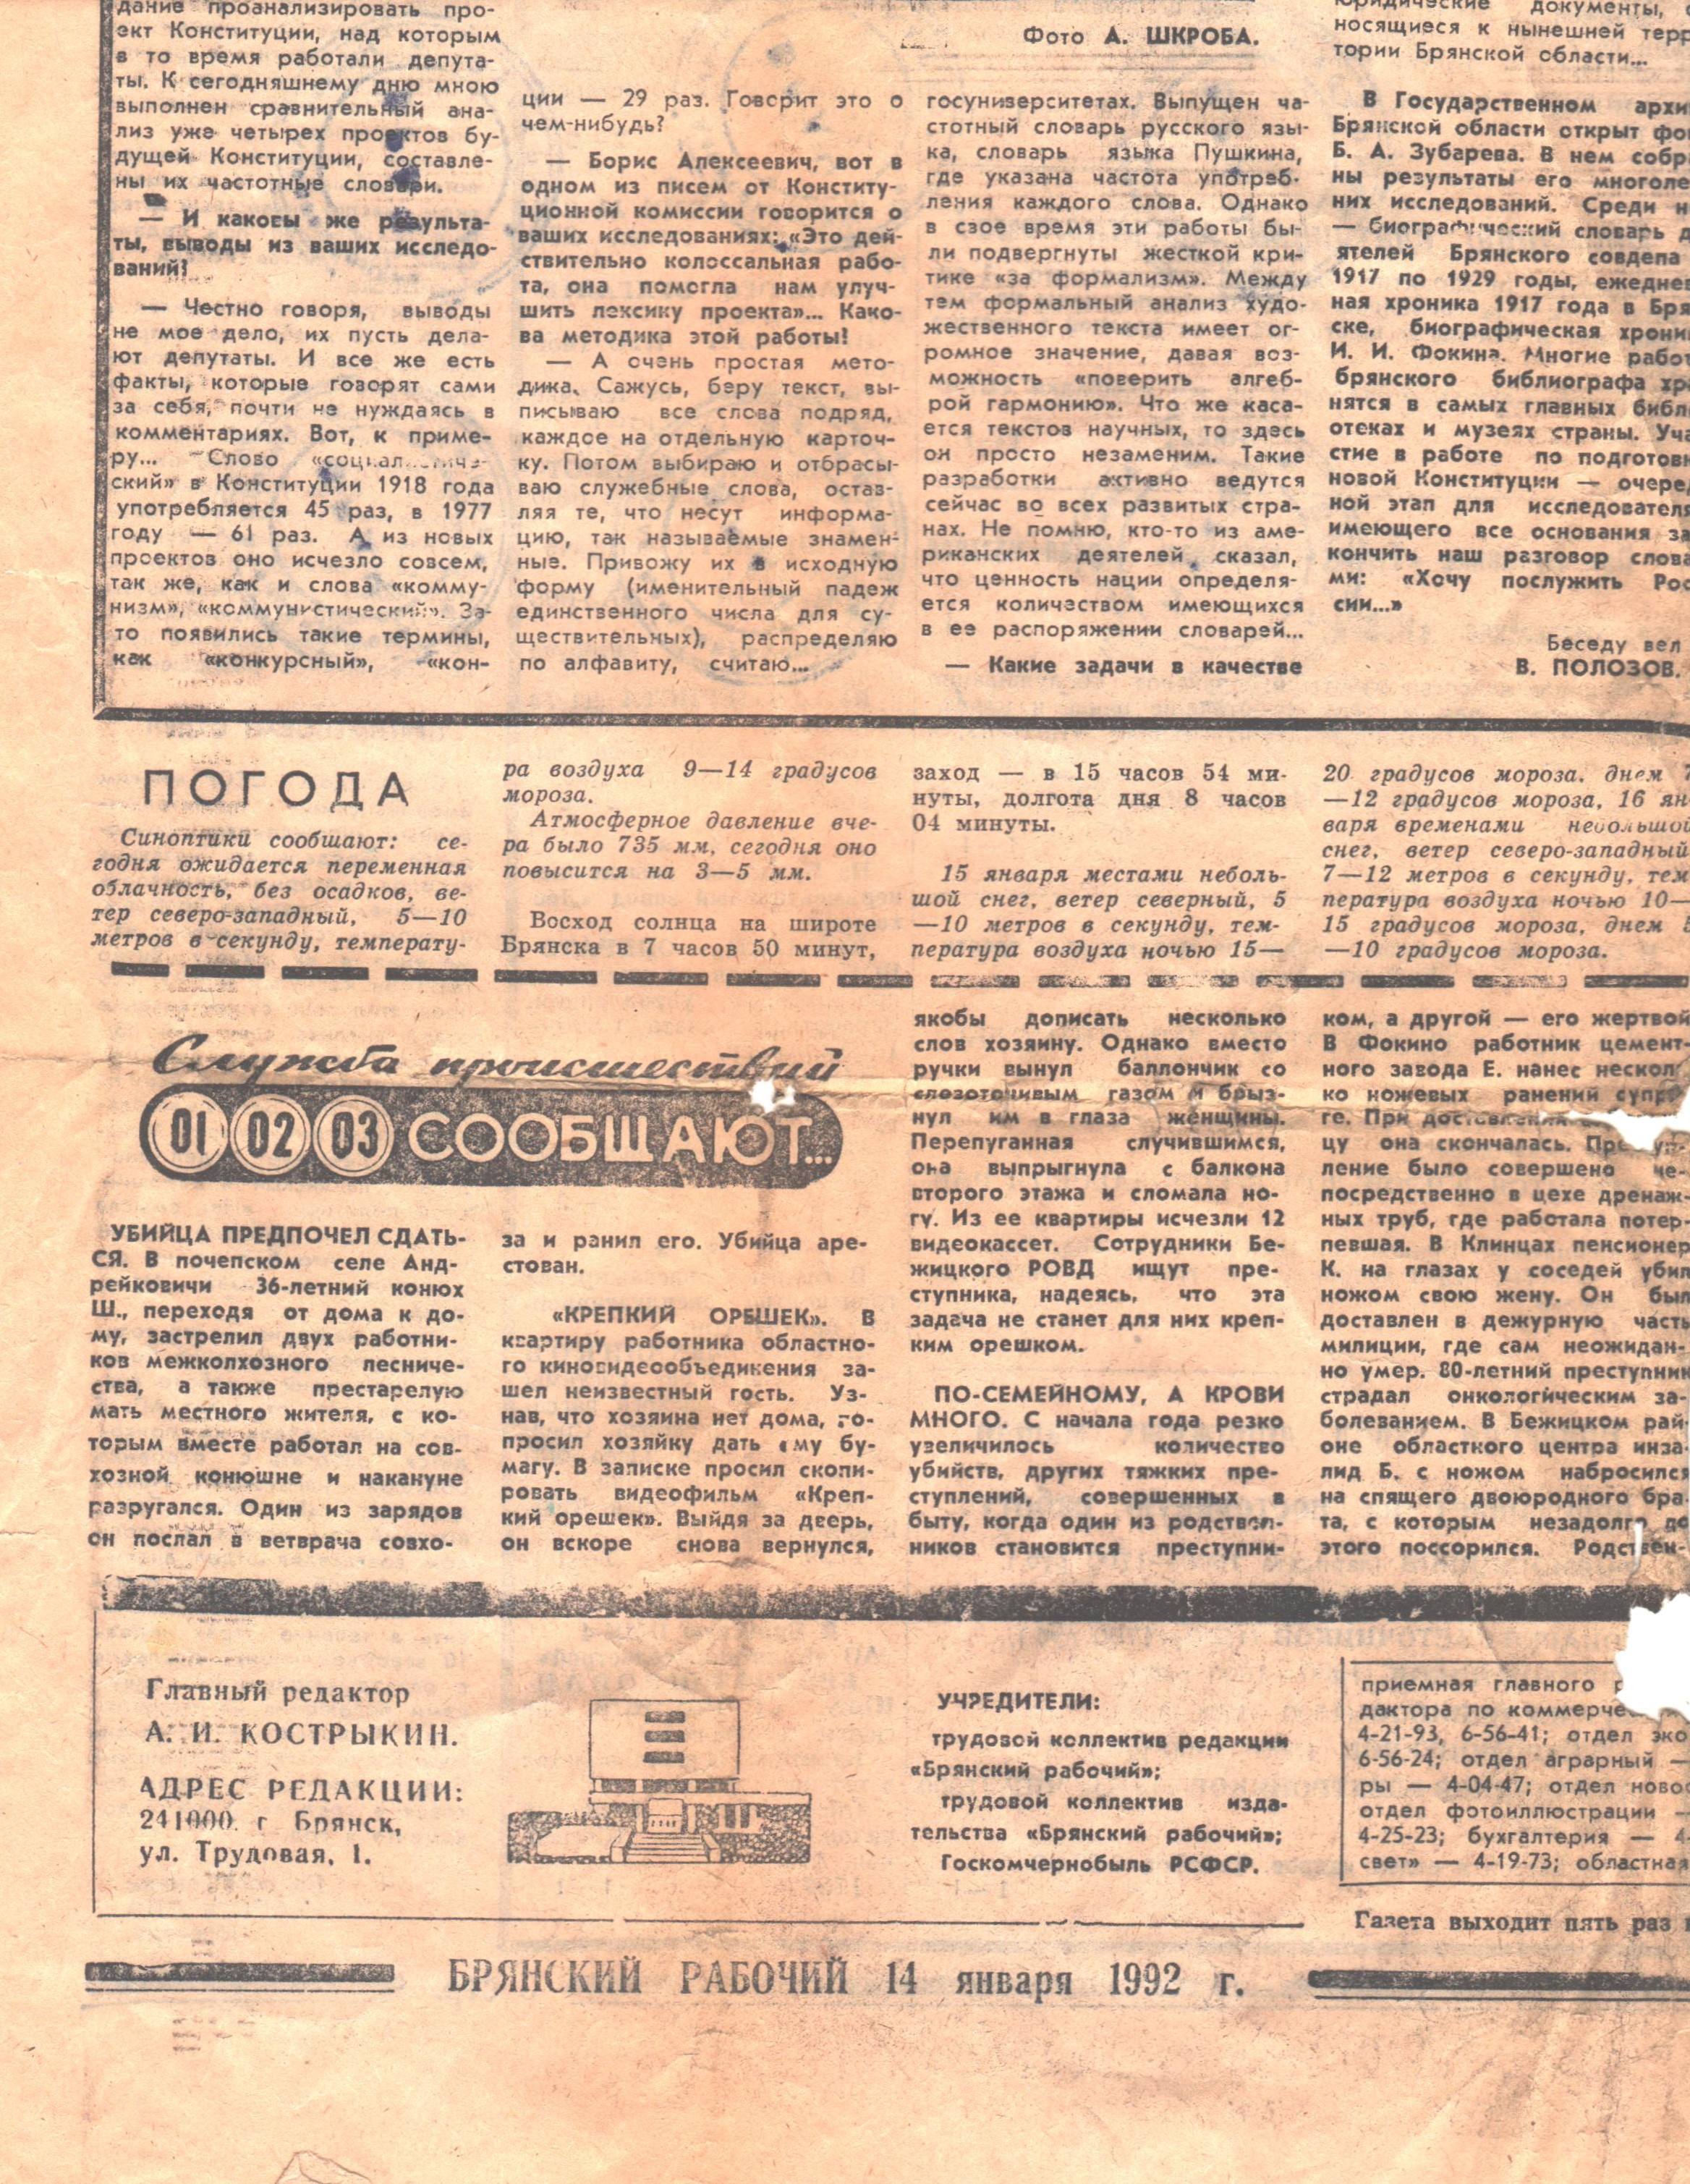 Брянский рабочий 14 января 1992г